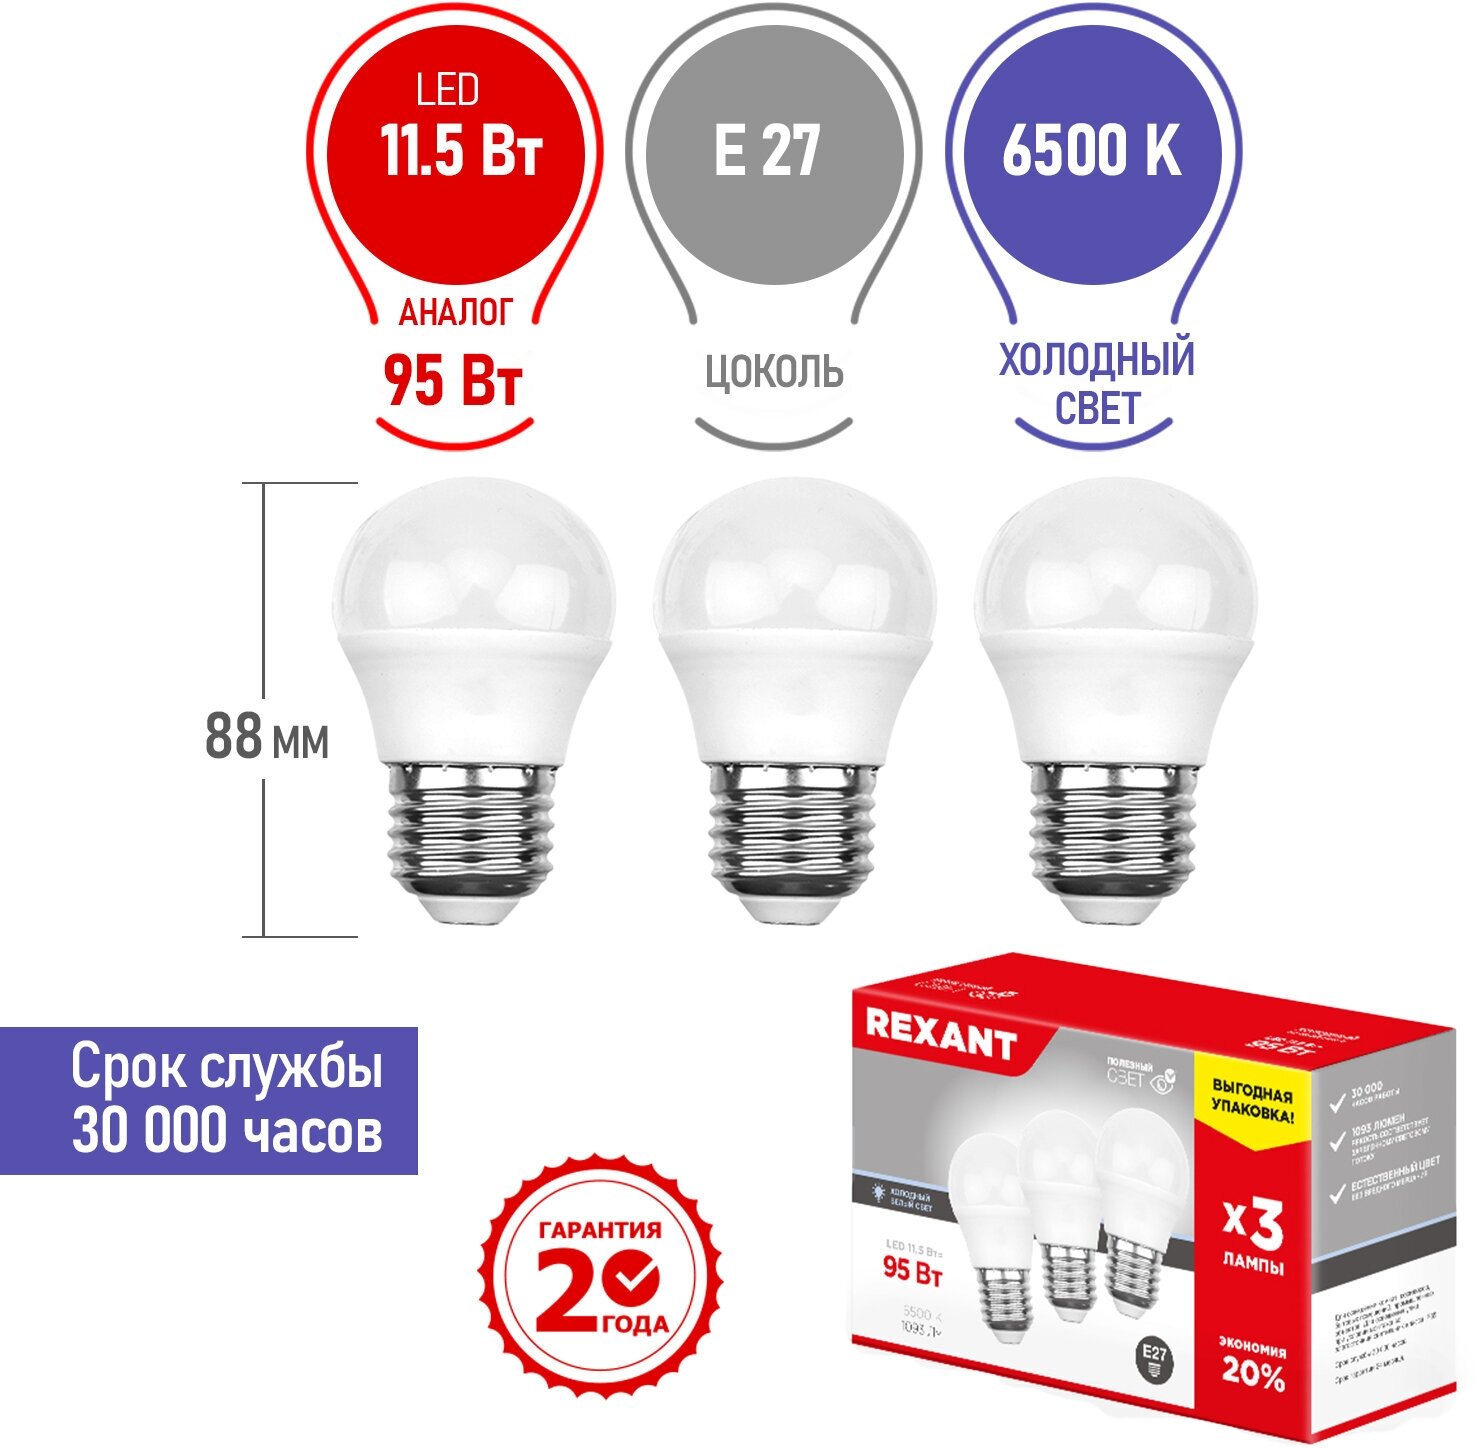 Лампочка E27, светодиодная, набор, Шарик (GL)LED 11,5 Вт, Яркость 1093 Лм 6500 K холодное свечение, в комплекте 3 штуки